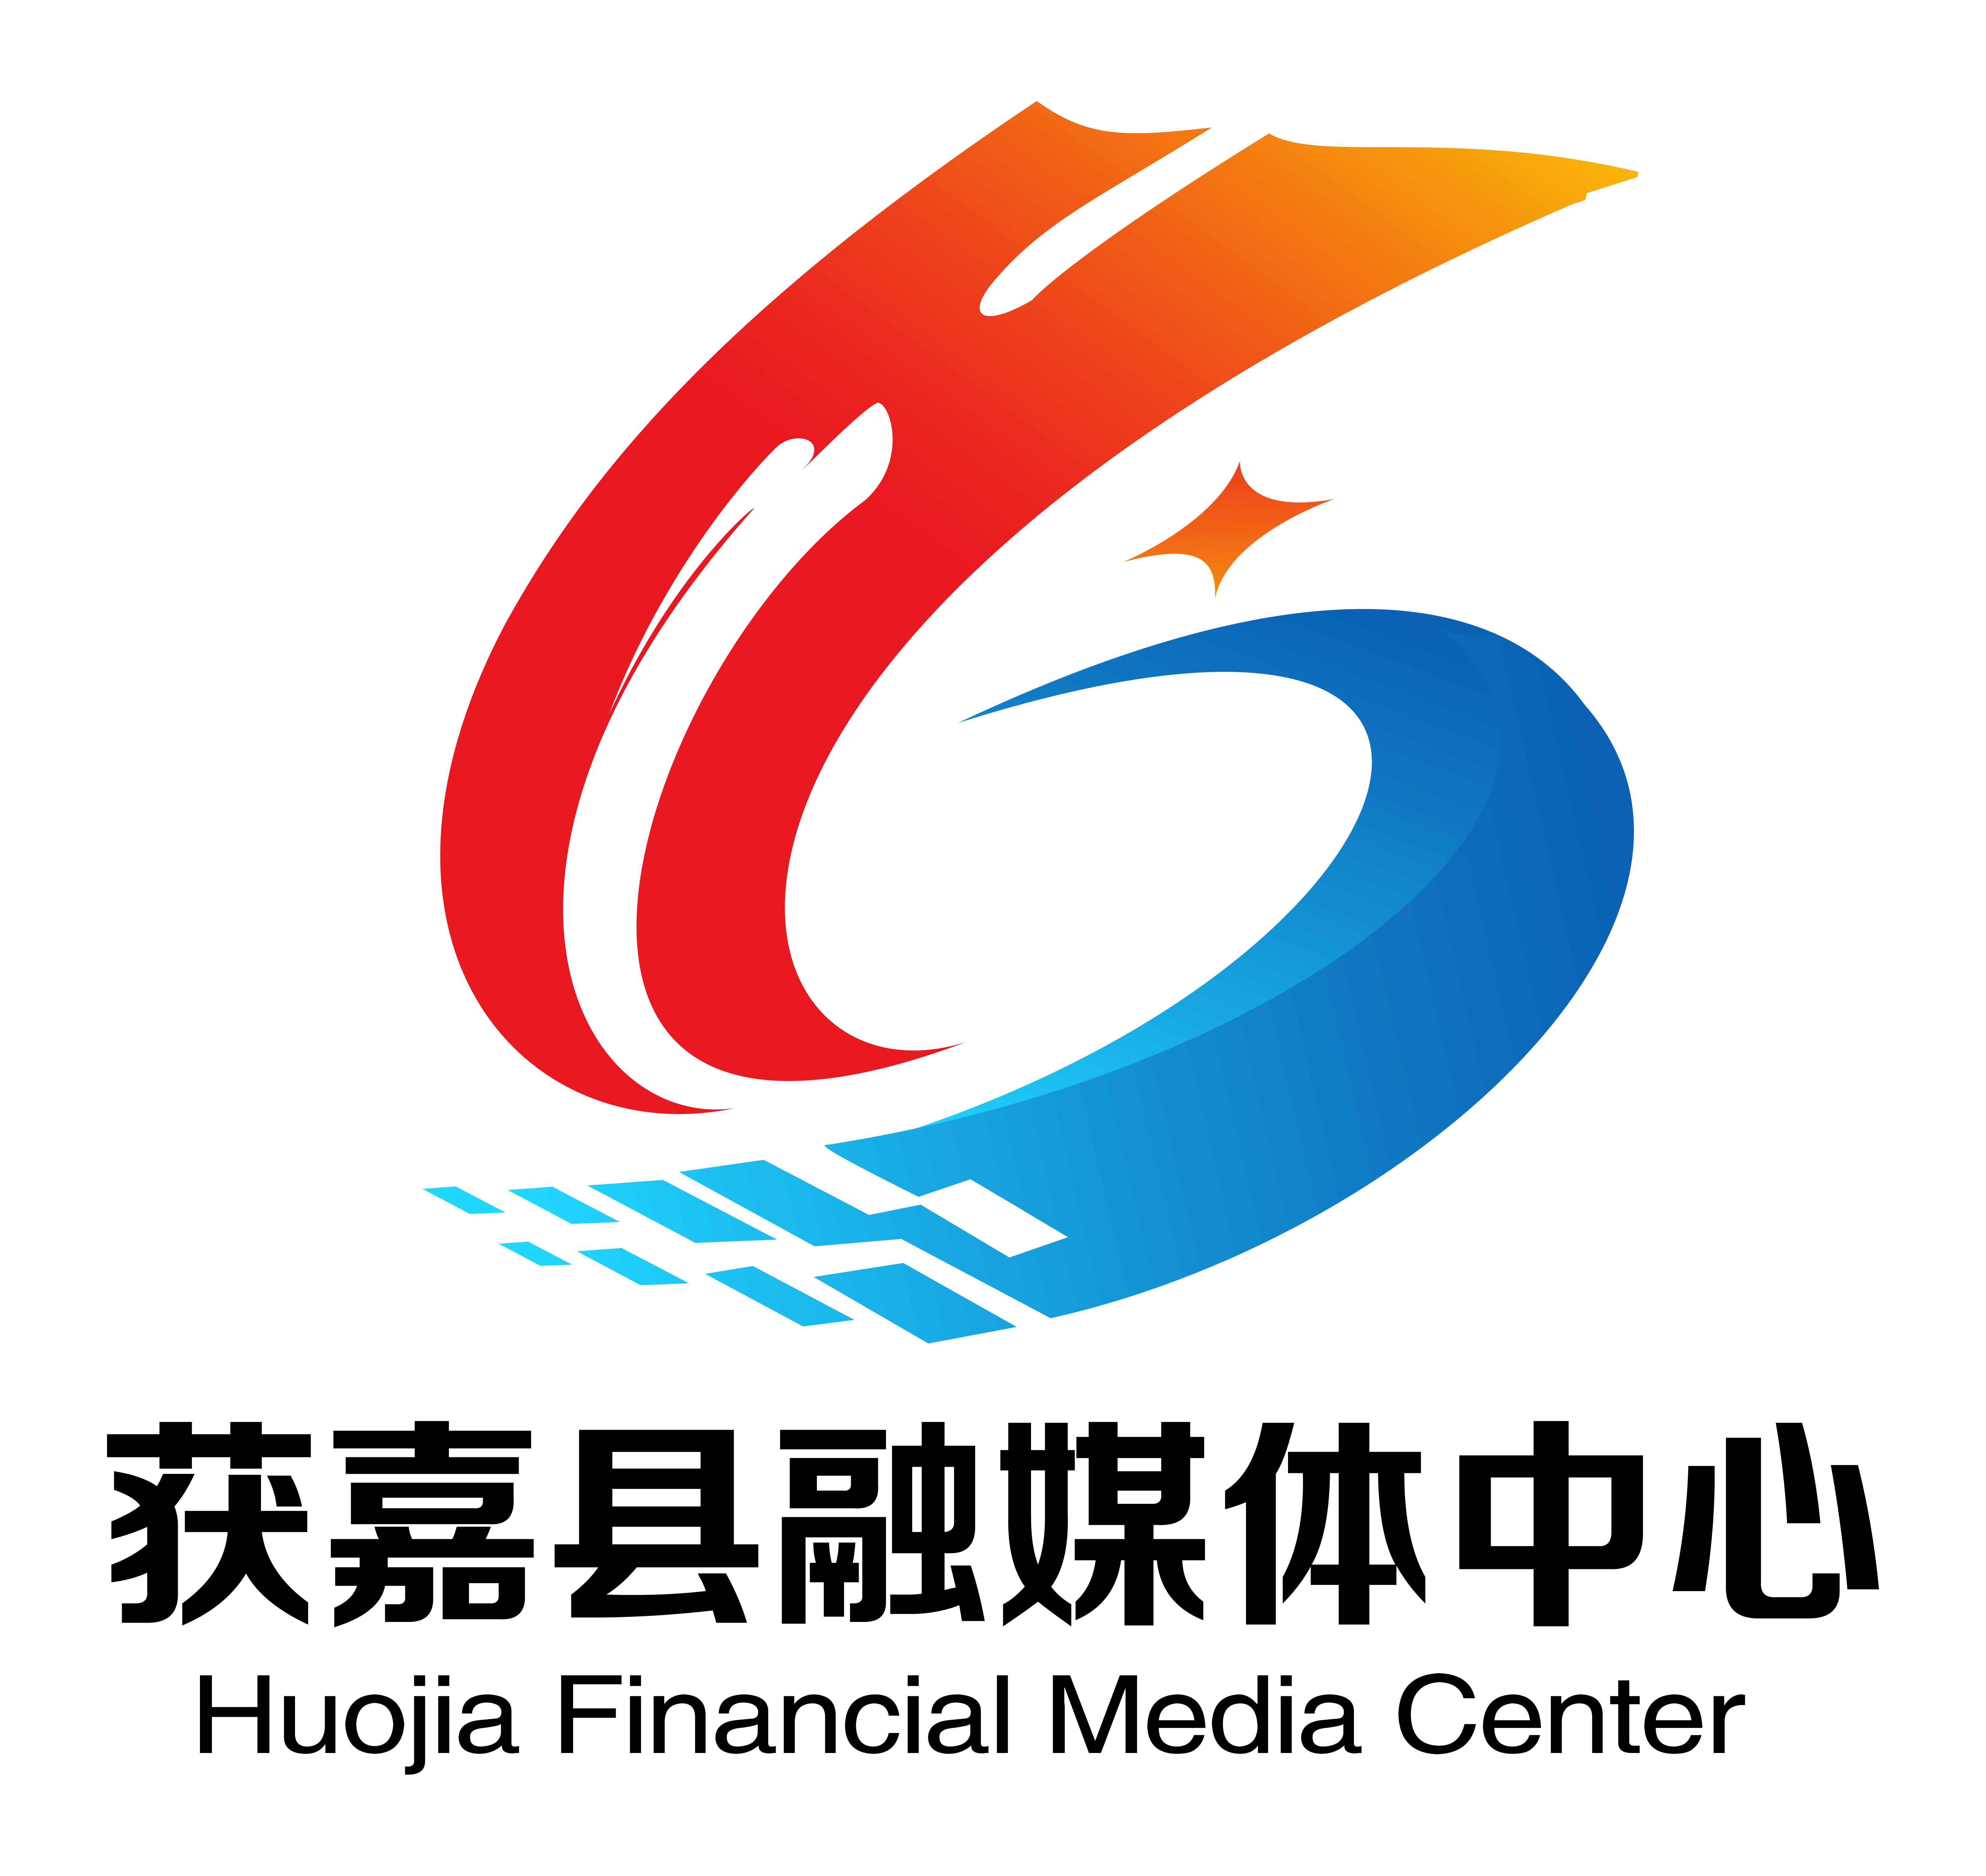 中国新乡logo含义图片